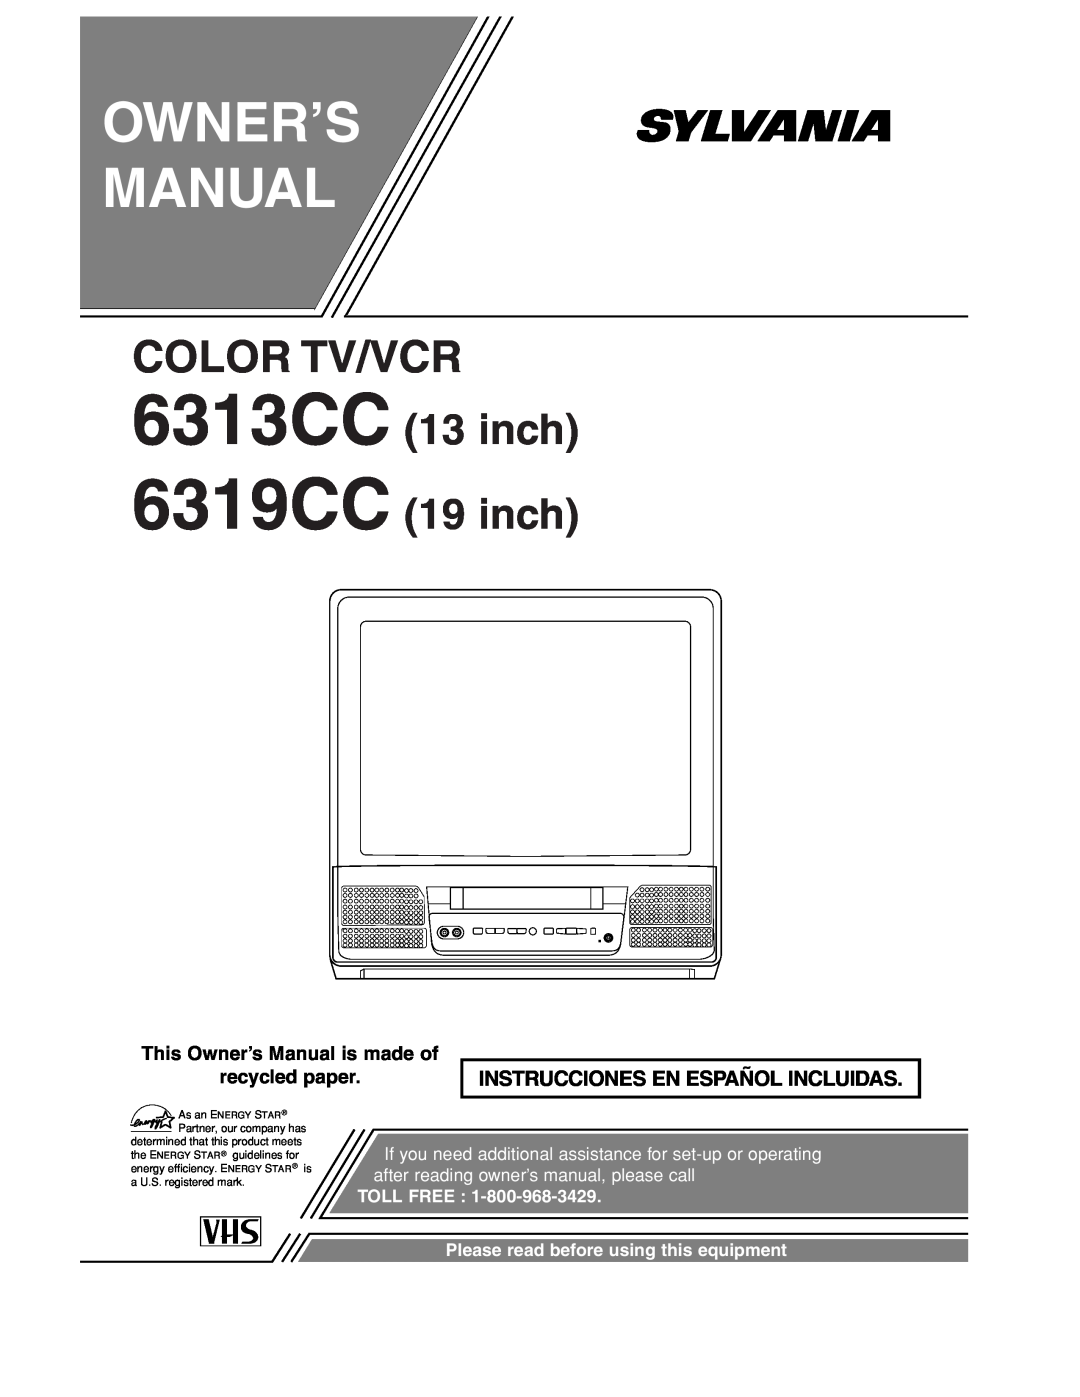 Sylvania owner manual 6313CC 6319CC, Owner’S Manual, Color Tv/Vcr, inch 19 inch, Instrucciones En Español Incluidas 